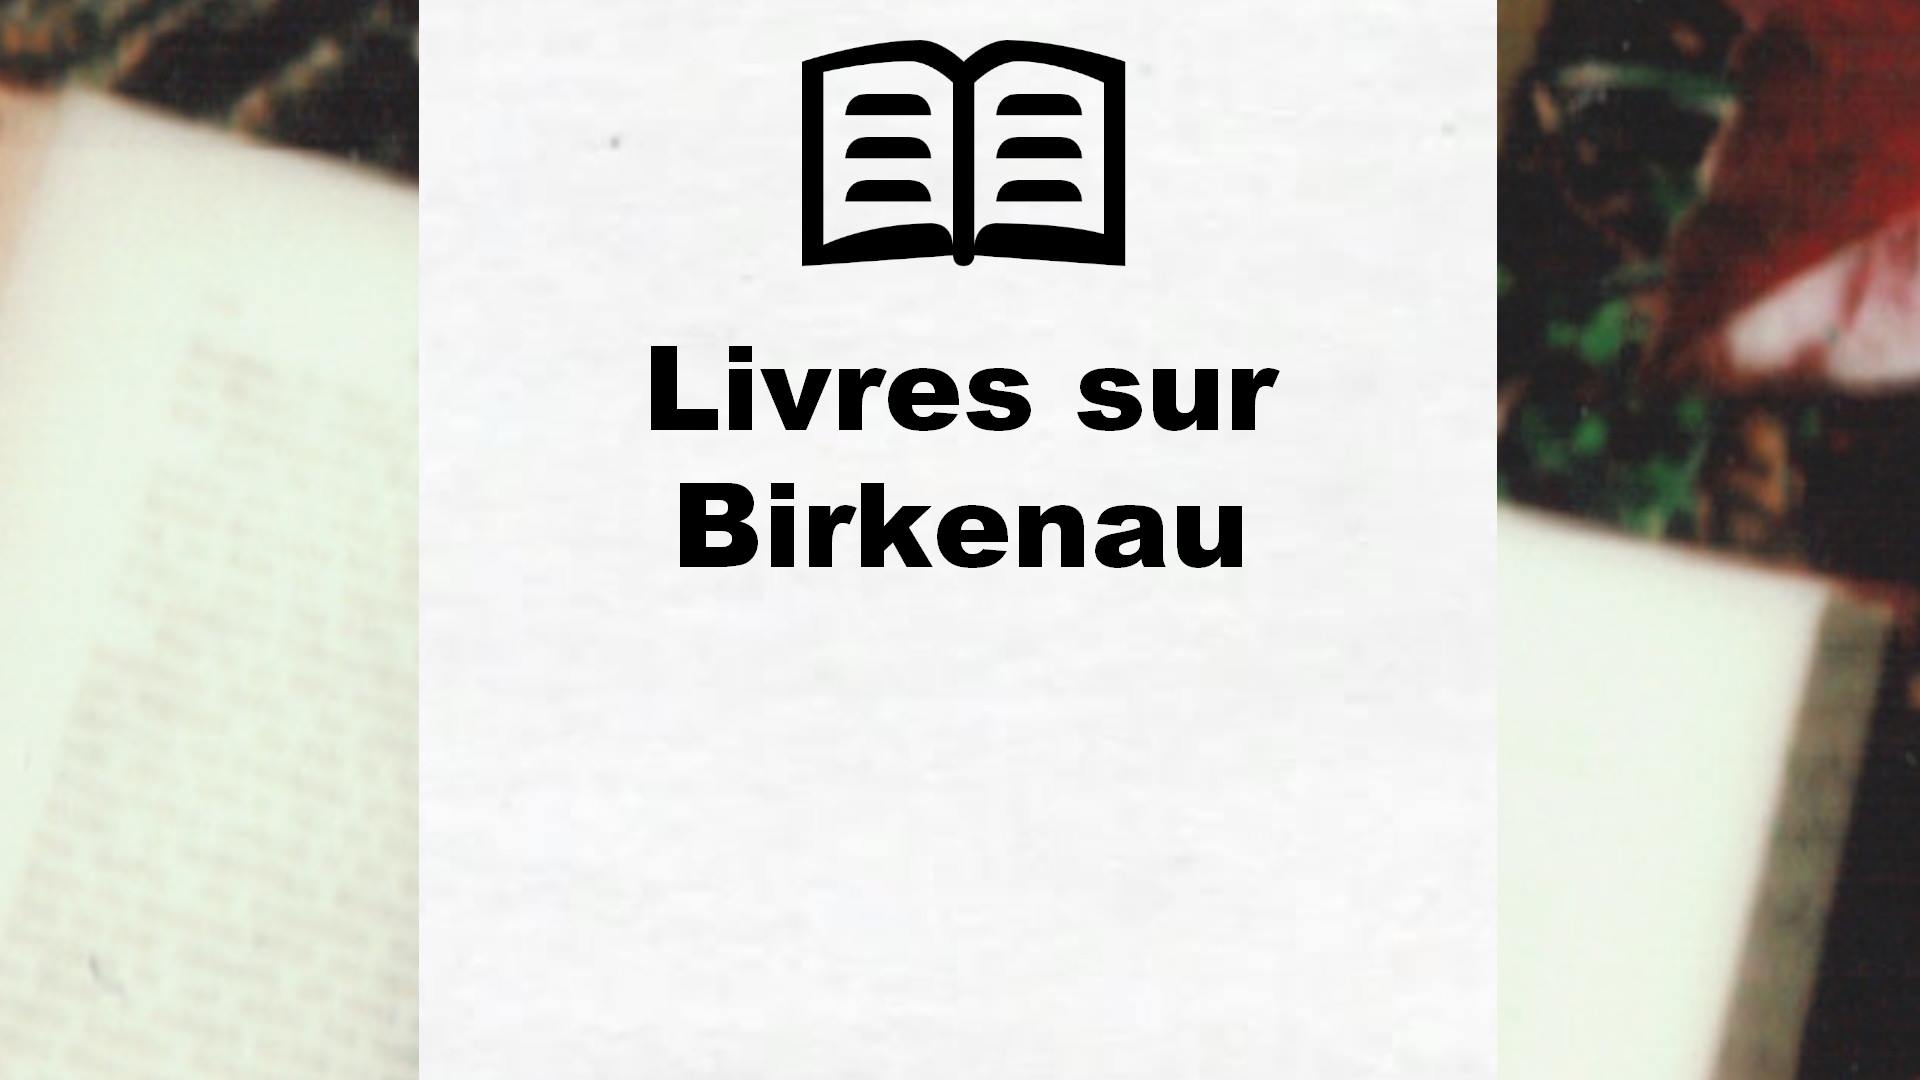 Livres sur Birkenau